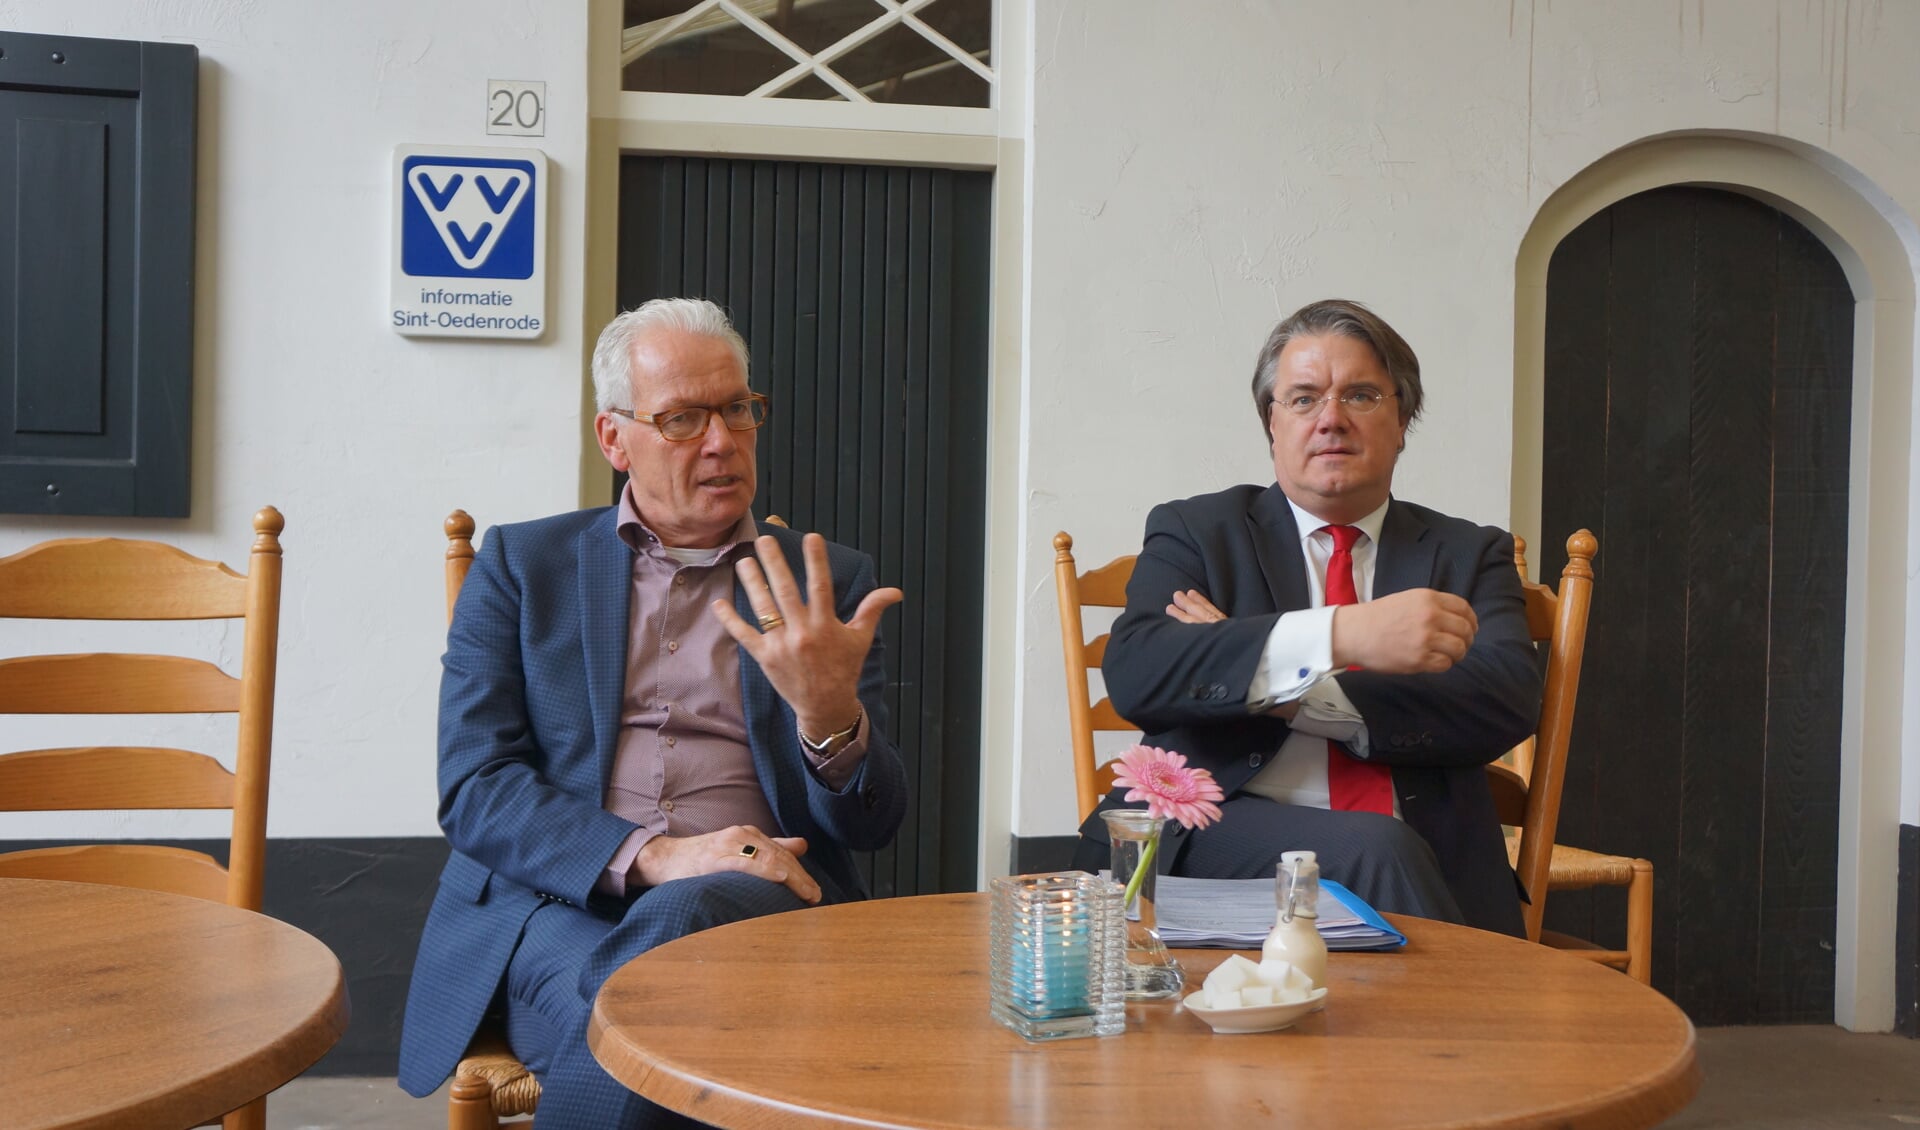 Burgemeester Maas (l) en Wim van de Donk stonden de pers te woord in de Gasthuishoeve.